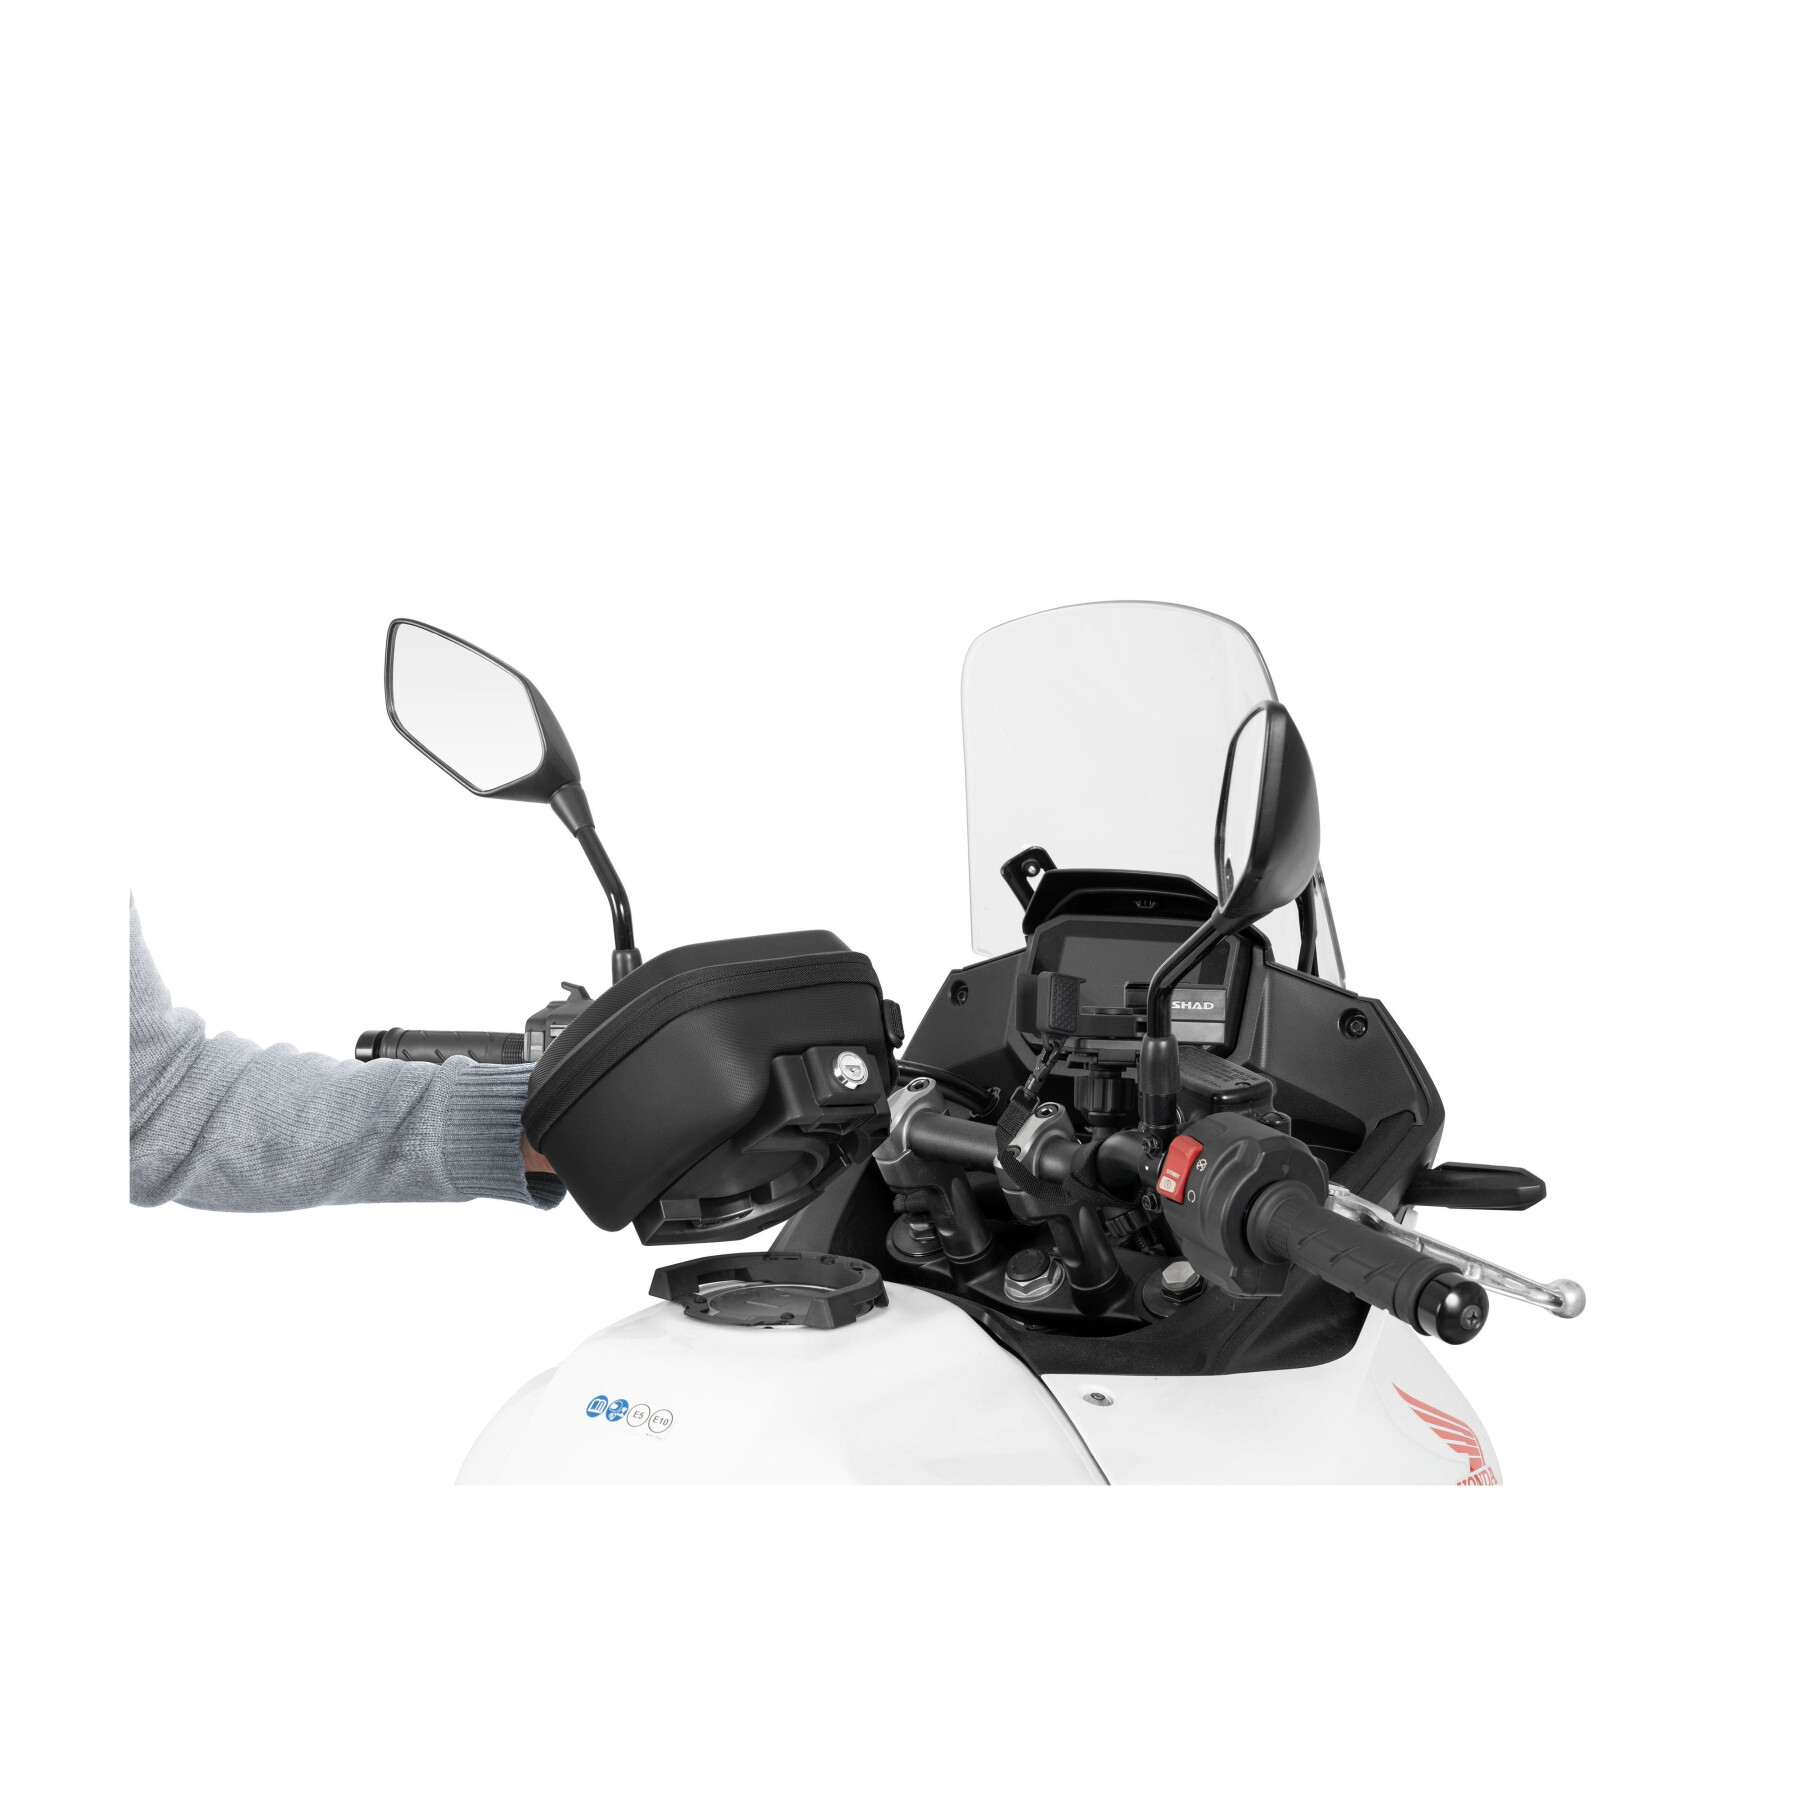 Motorcycle tank Bag Shad Click System VG1